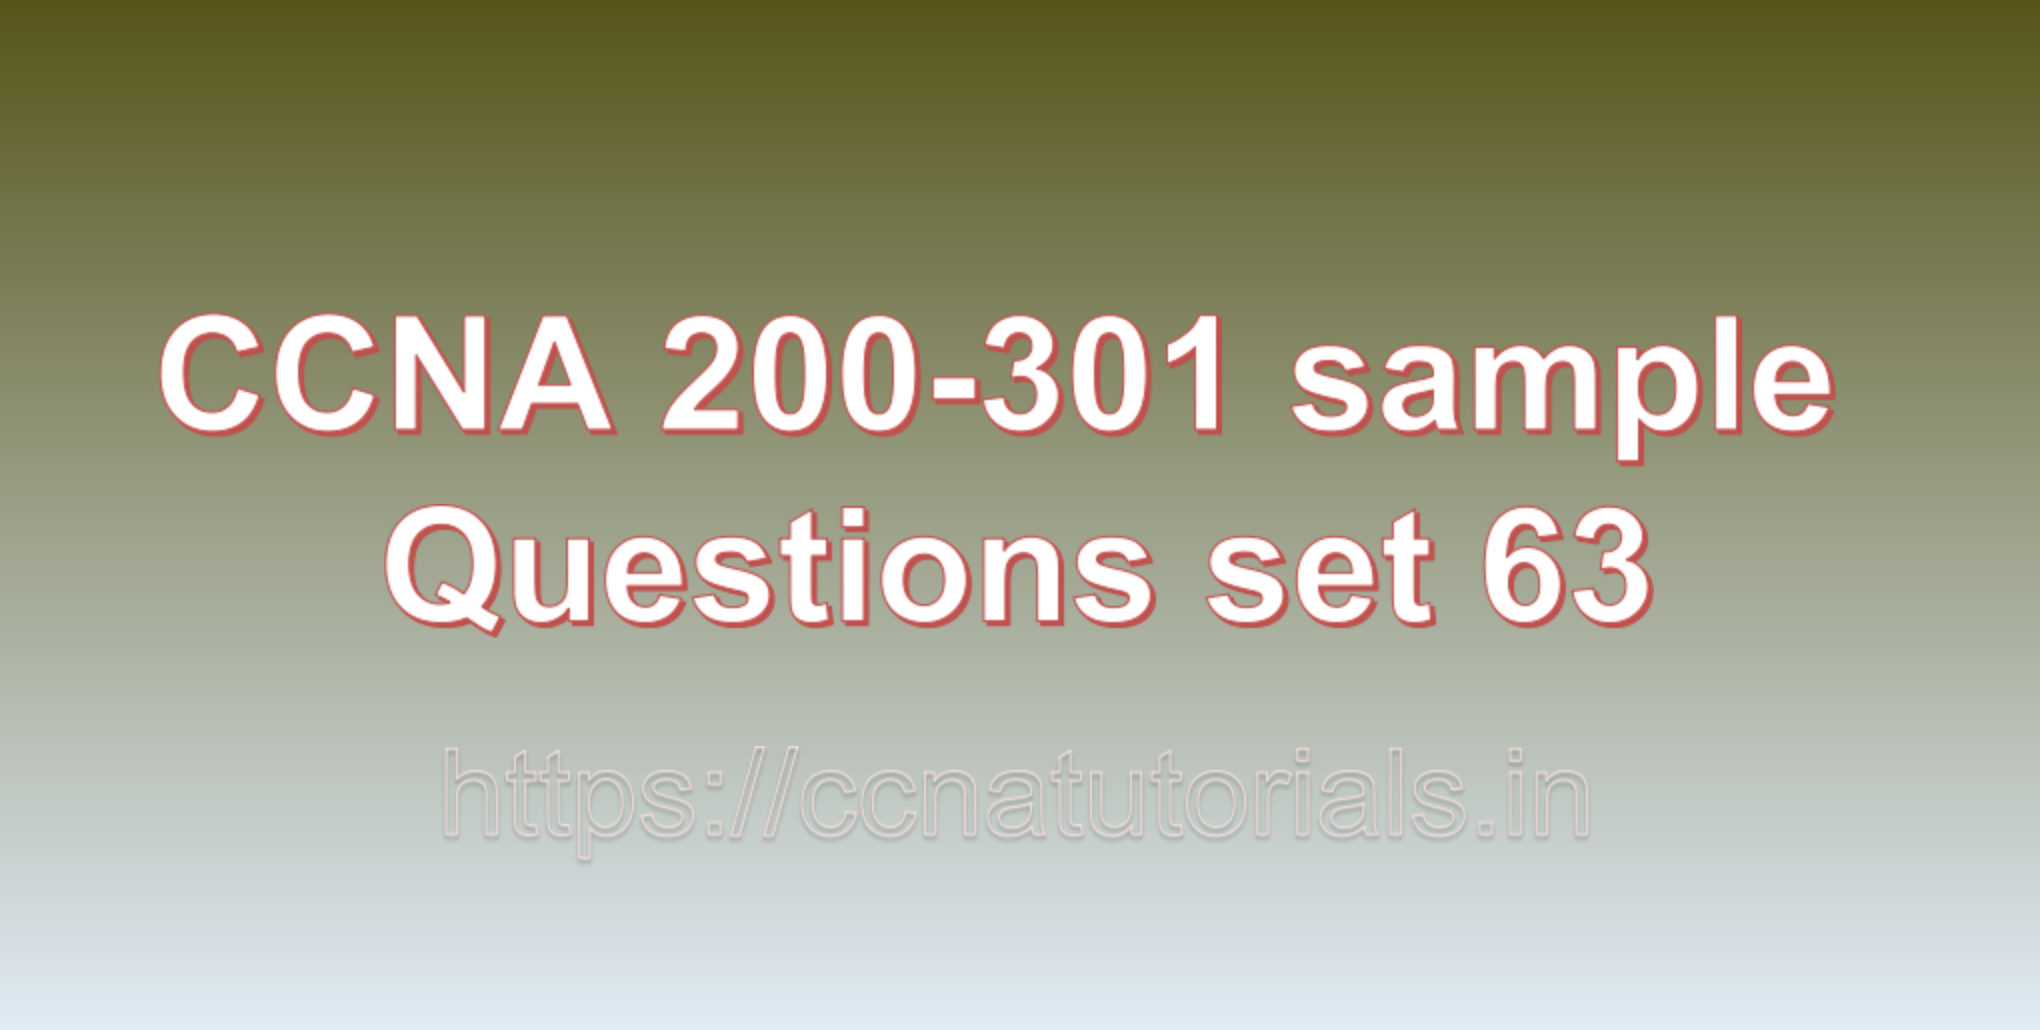 ccna sample questions set 63, ccna tutorials, CCNA Exam, ccna